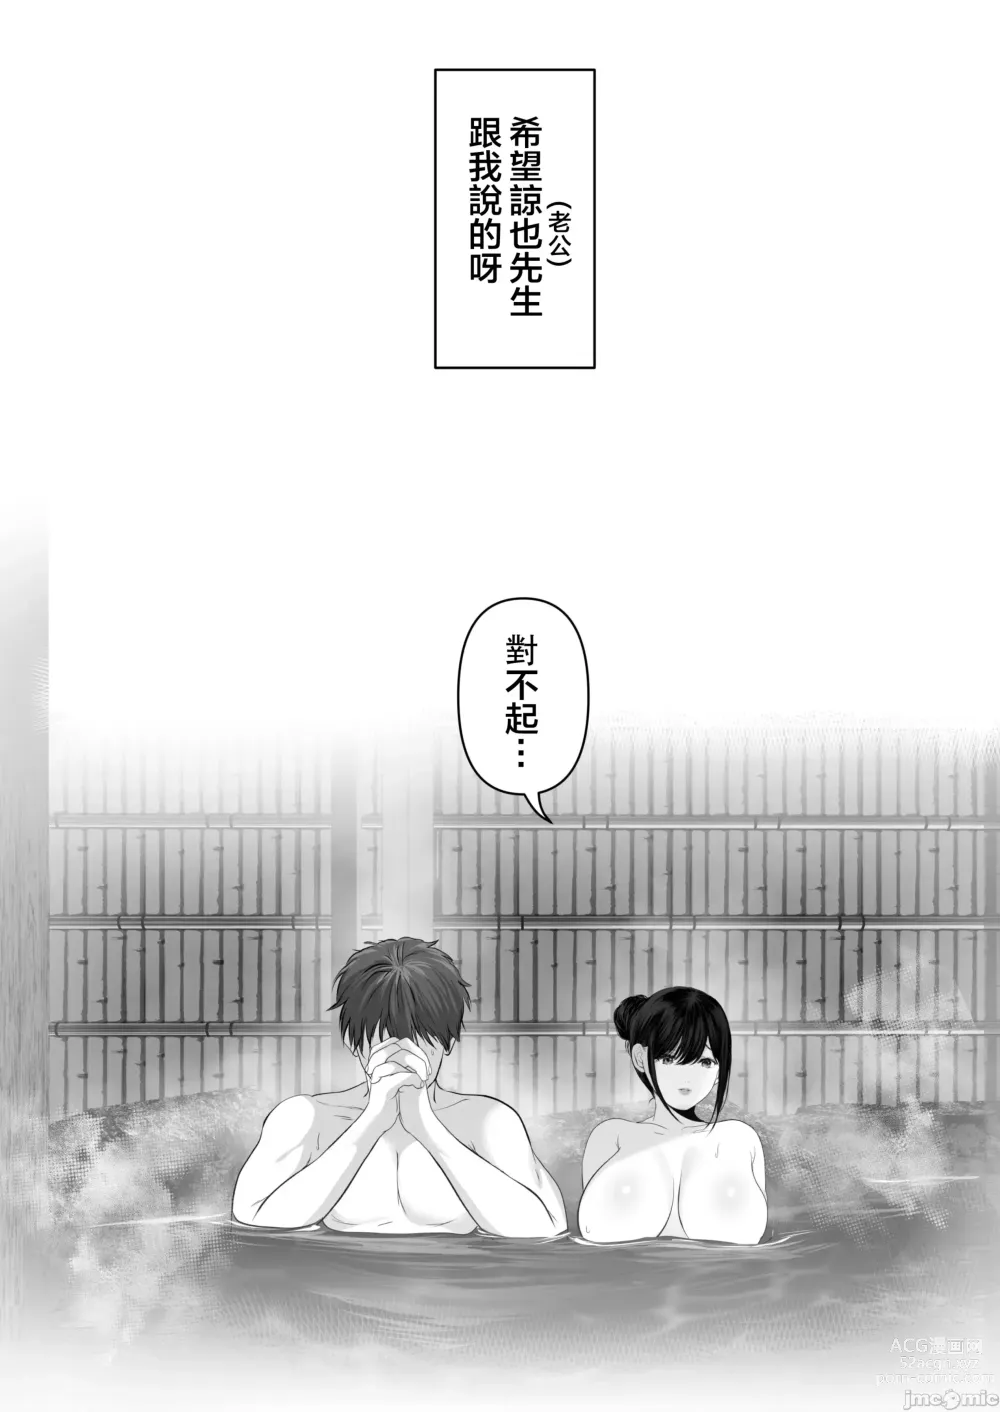 Page 557 of doujinshi Anata ga Nozomu nara 1-5